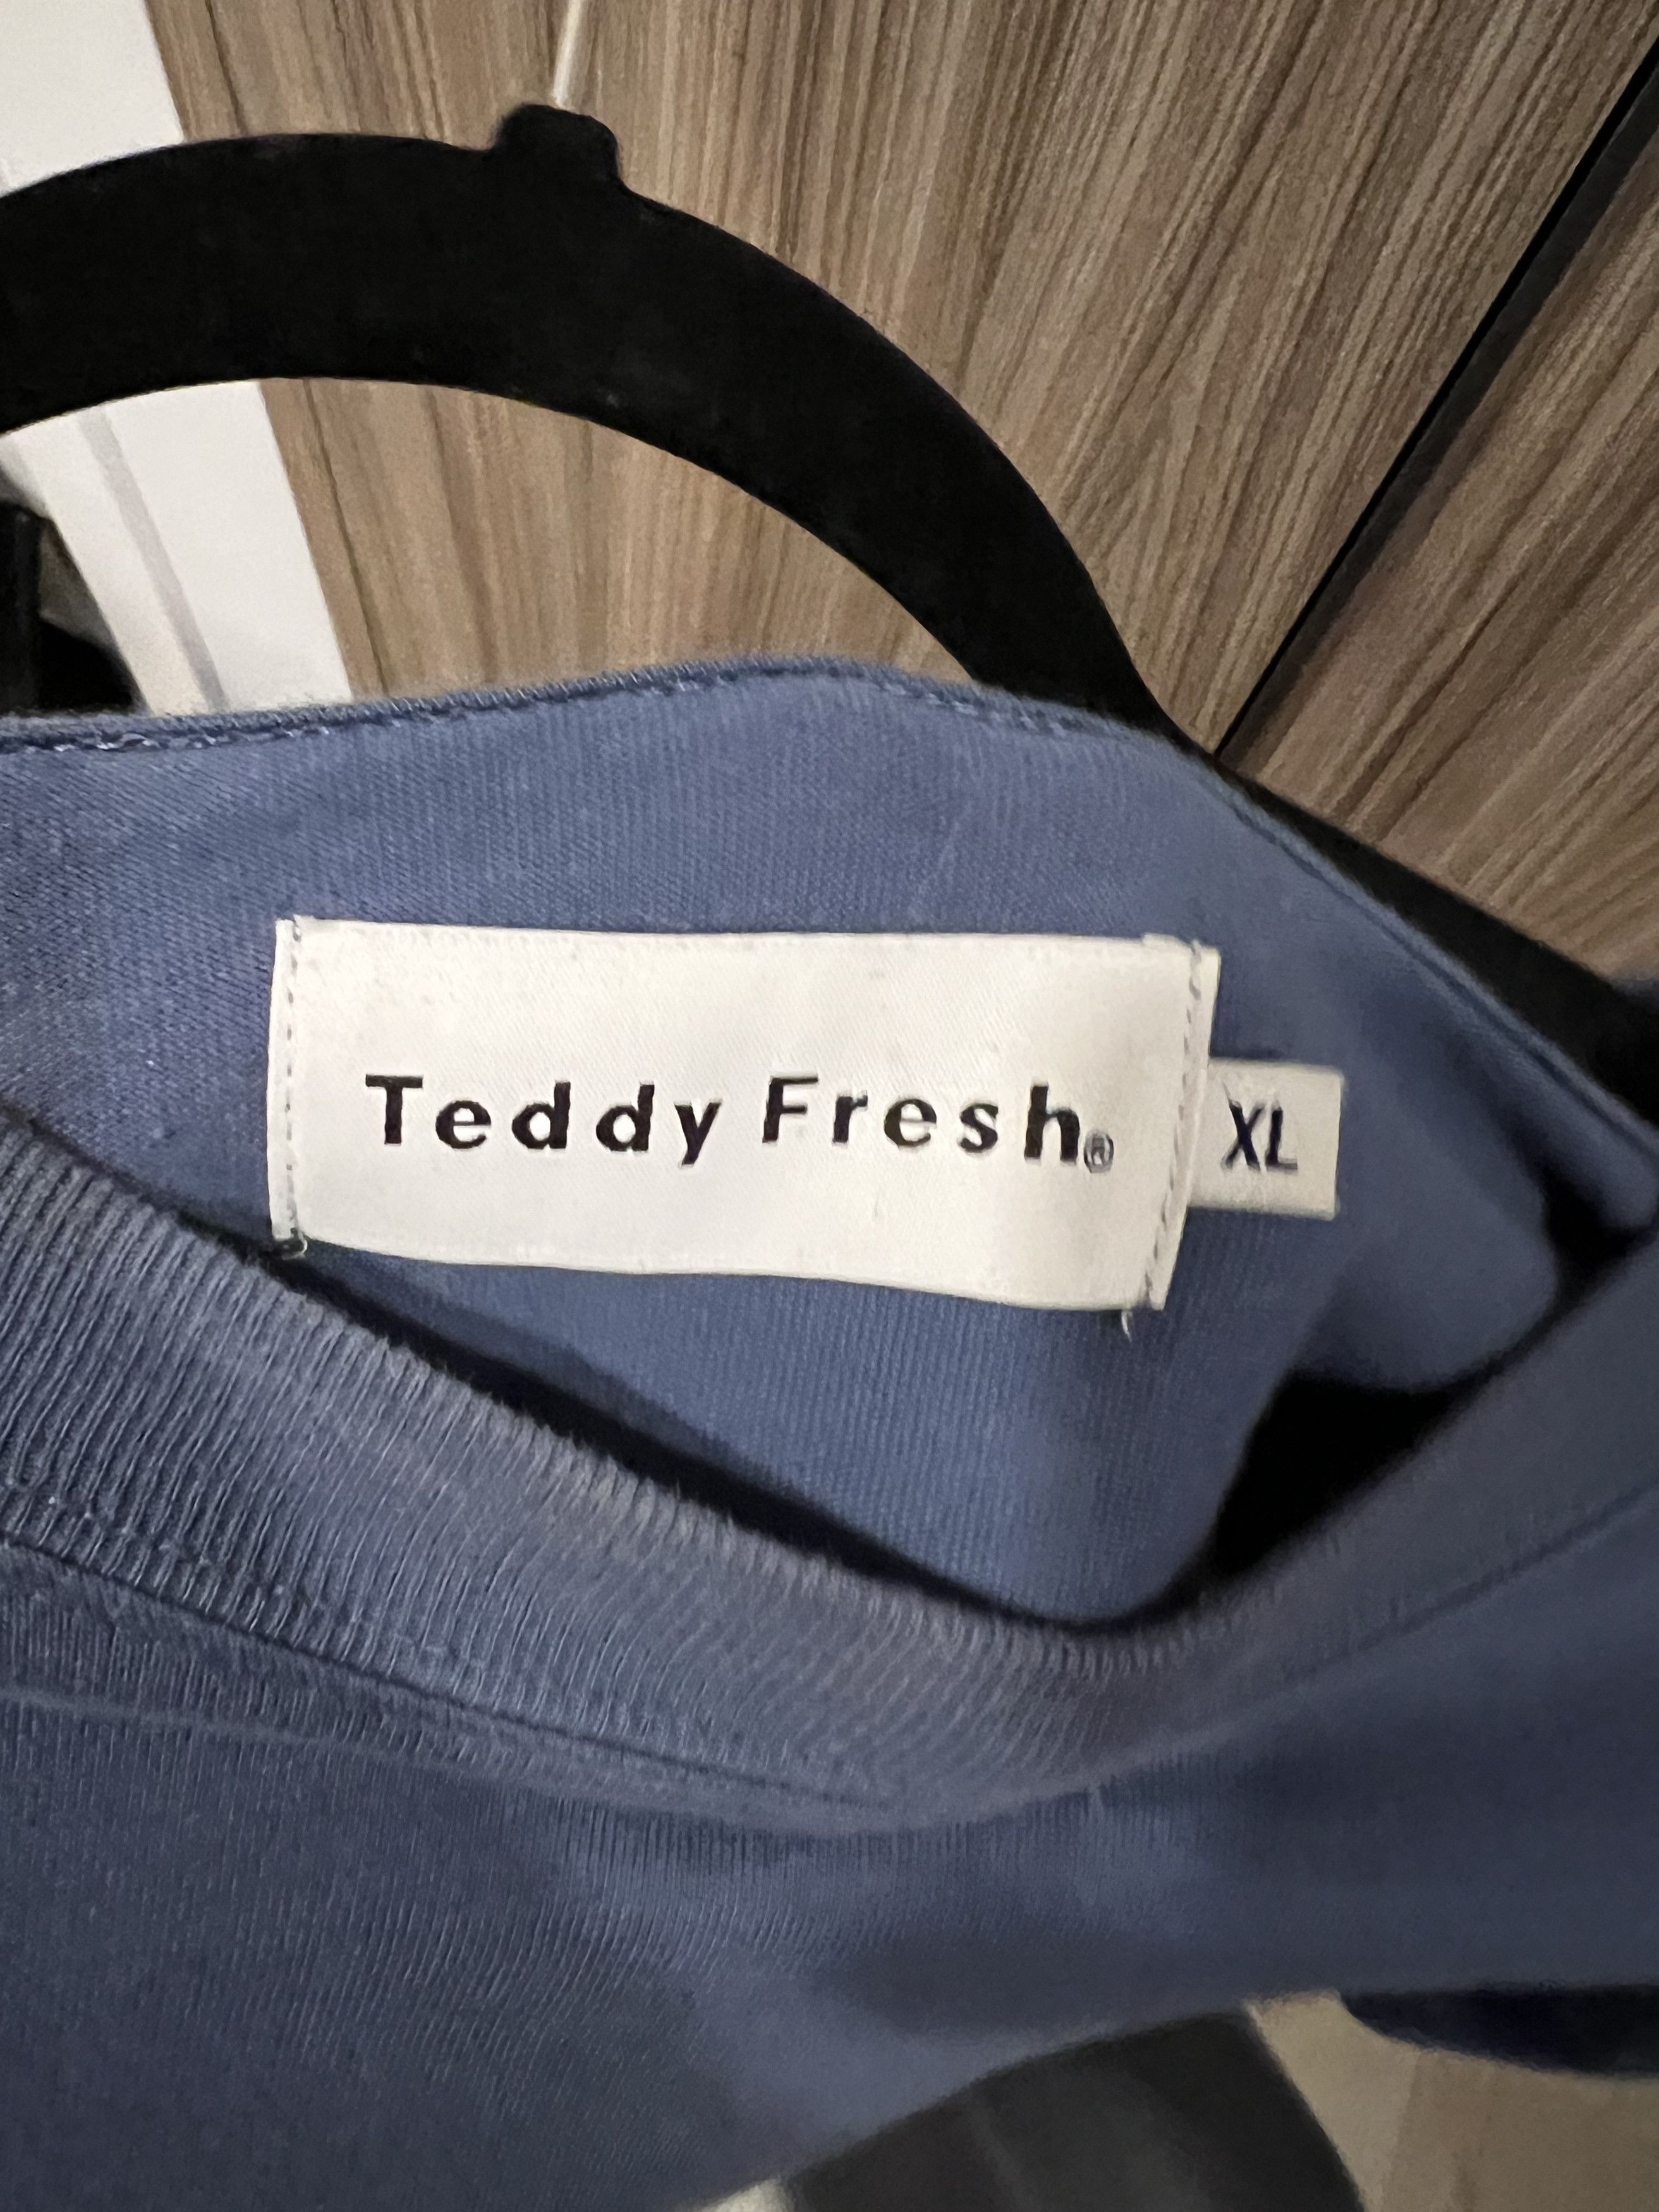 Teddy Fresh Teddy Fresh 1 Year Anniversary Shirt Size US XL / EU 56 / 4 - 4 Preview